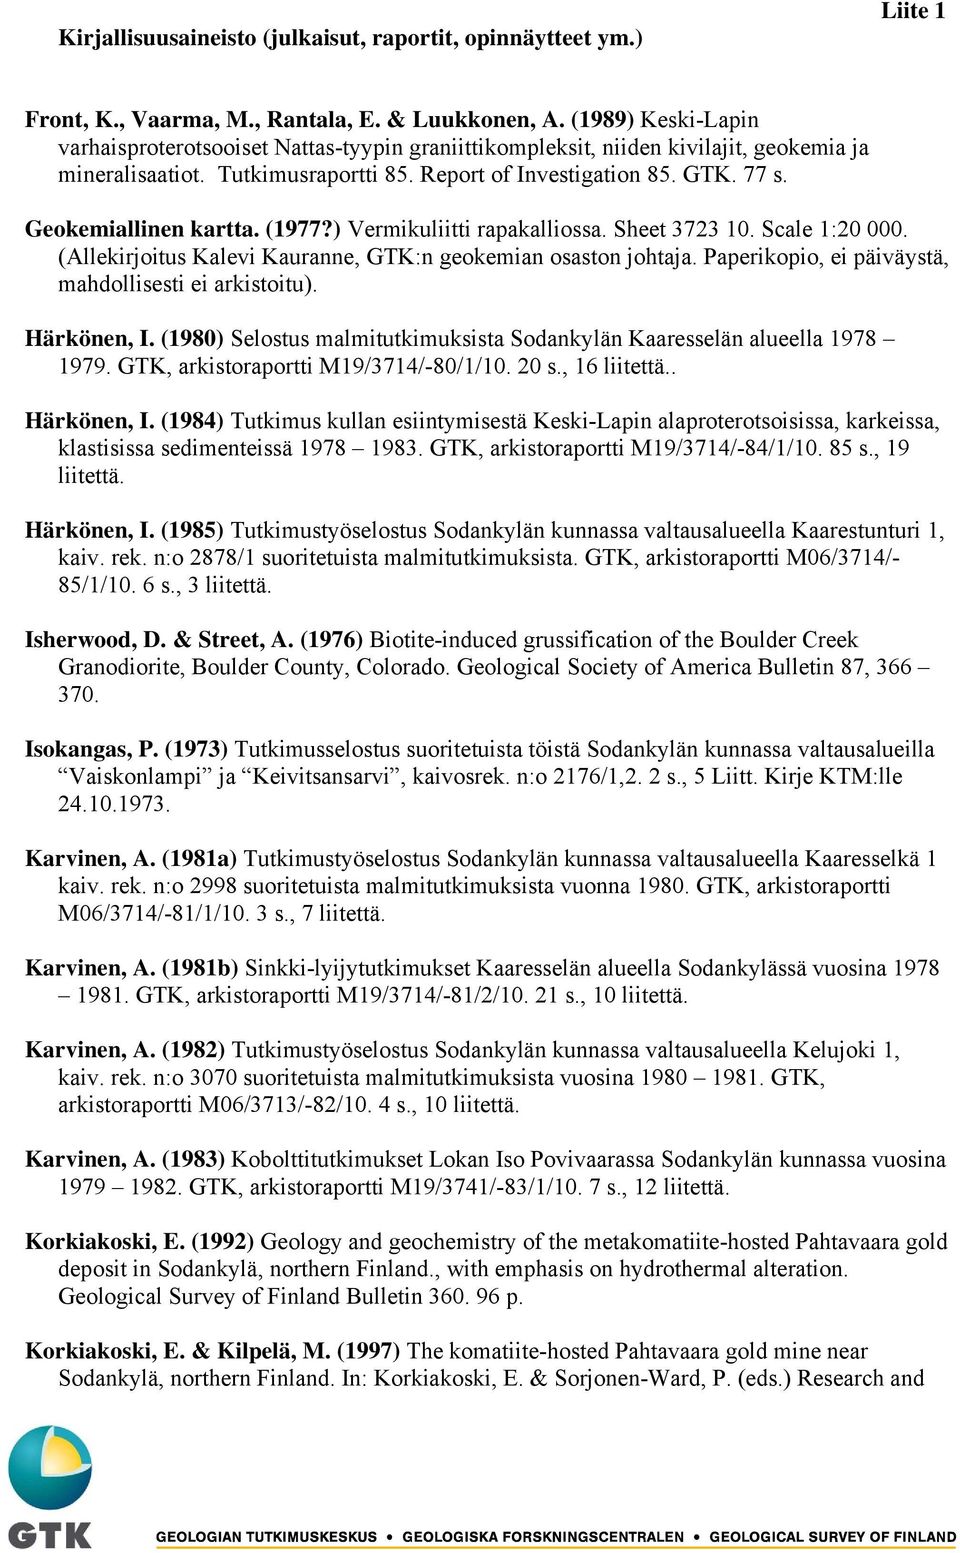 Geokemiallinen kartta. (1977?) Vermikuliitti rapakalliossa. Sheet 3723 10. Scale 1:20 000. (Allekirjoitus Kalevi Kauranne, GTK:n geokemian osaston johtaja.